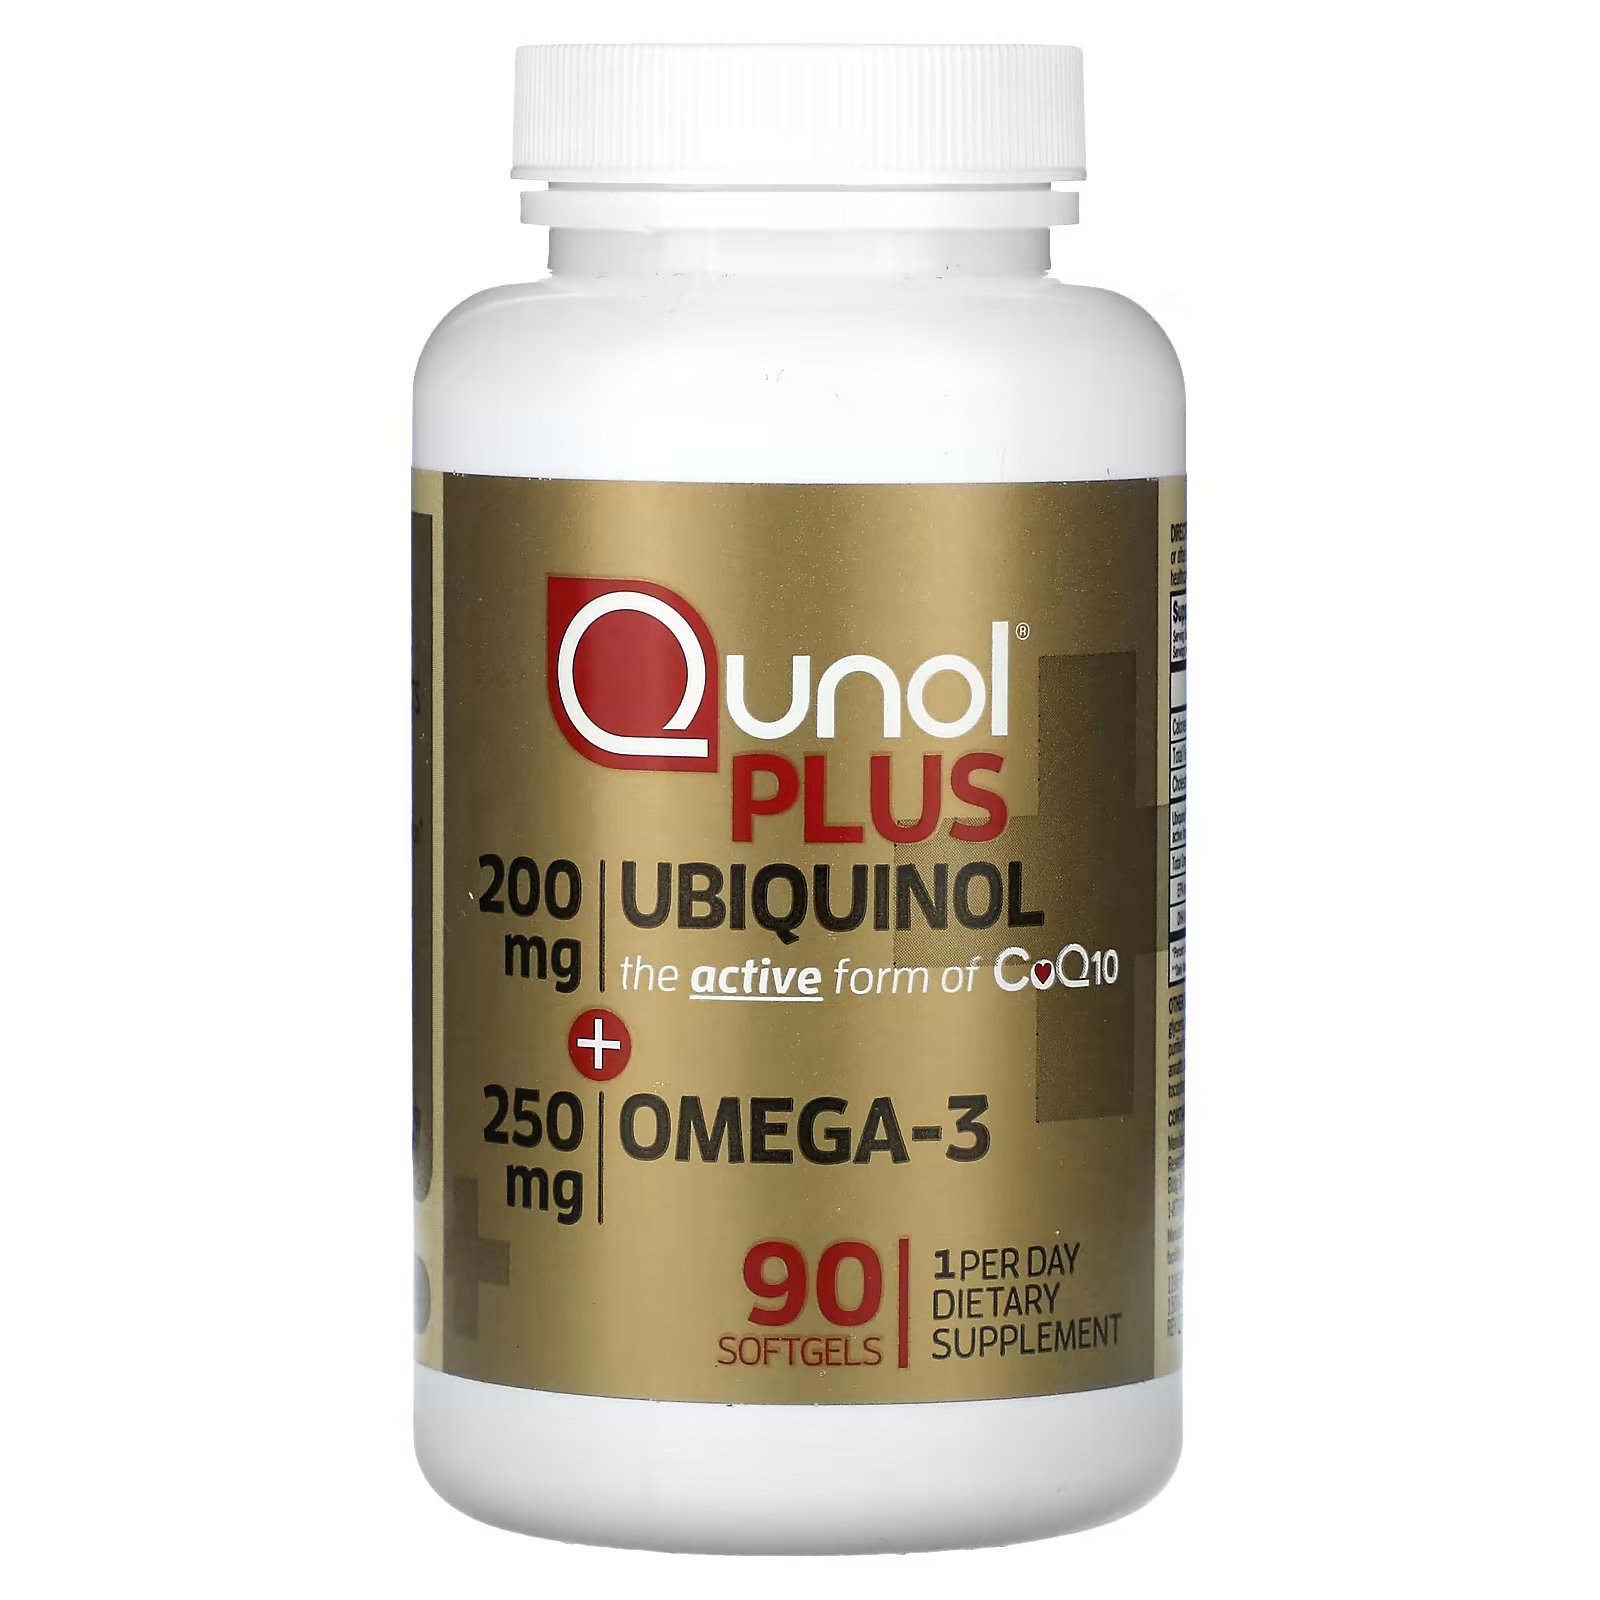 Убихинол + Омега-3 Qunol Plus 200 мг + 250 мг убихинол омега 3 qunol plus 200 мг 250 мг